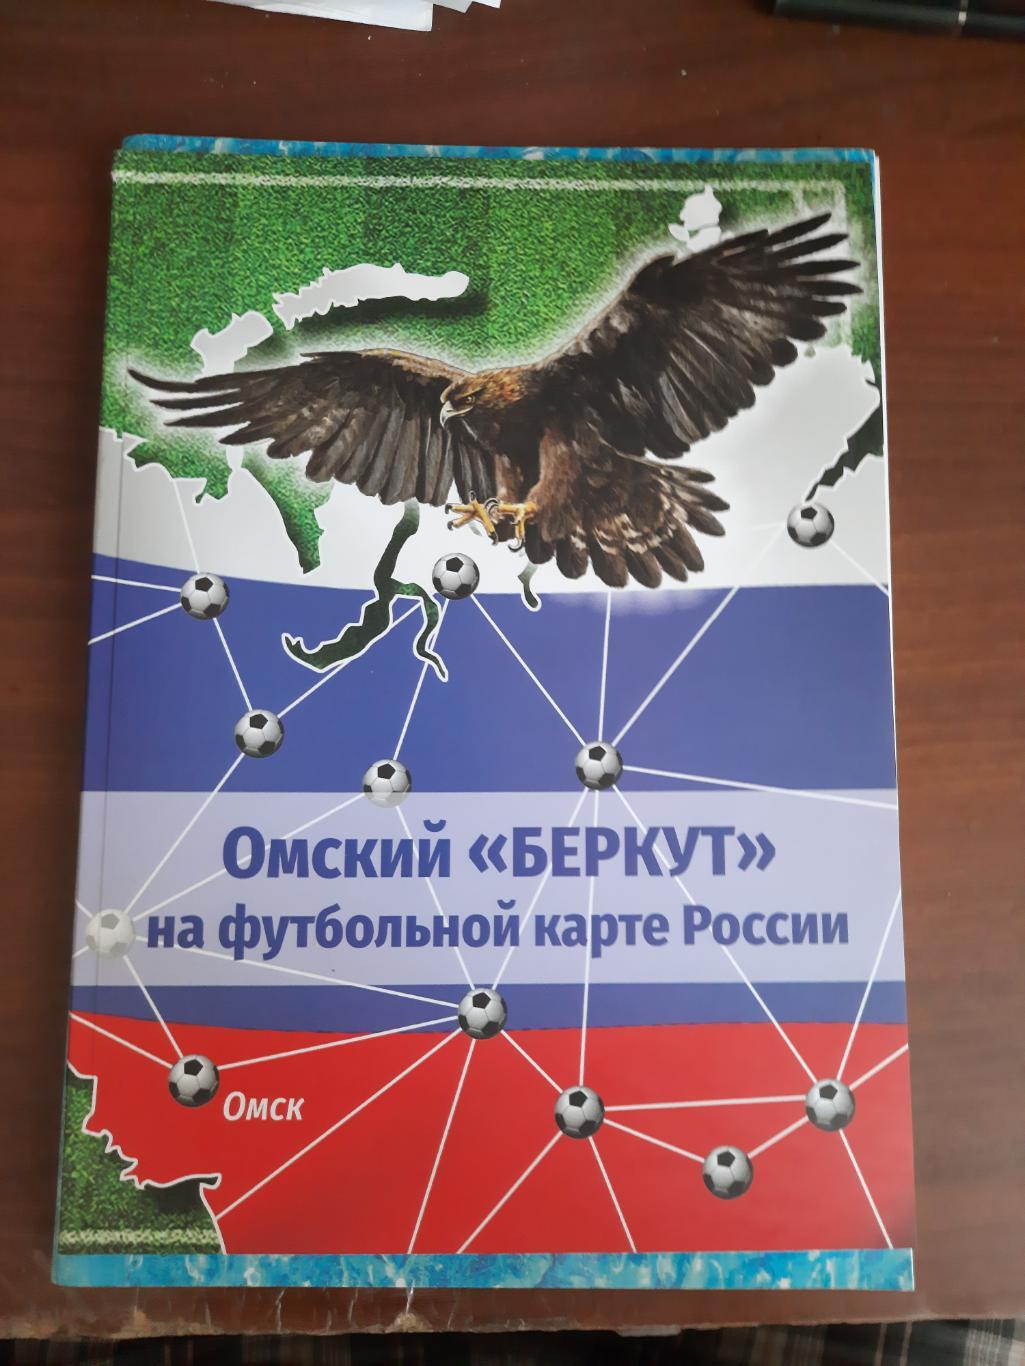 Омский Беркут на футбольной карте России (2022 год, 94 страницы, большой формат)